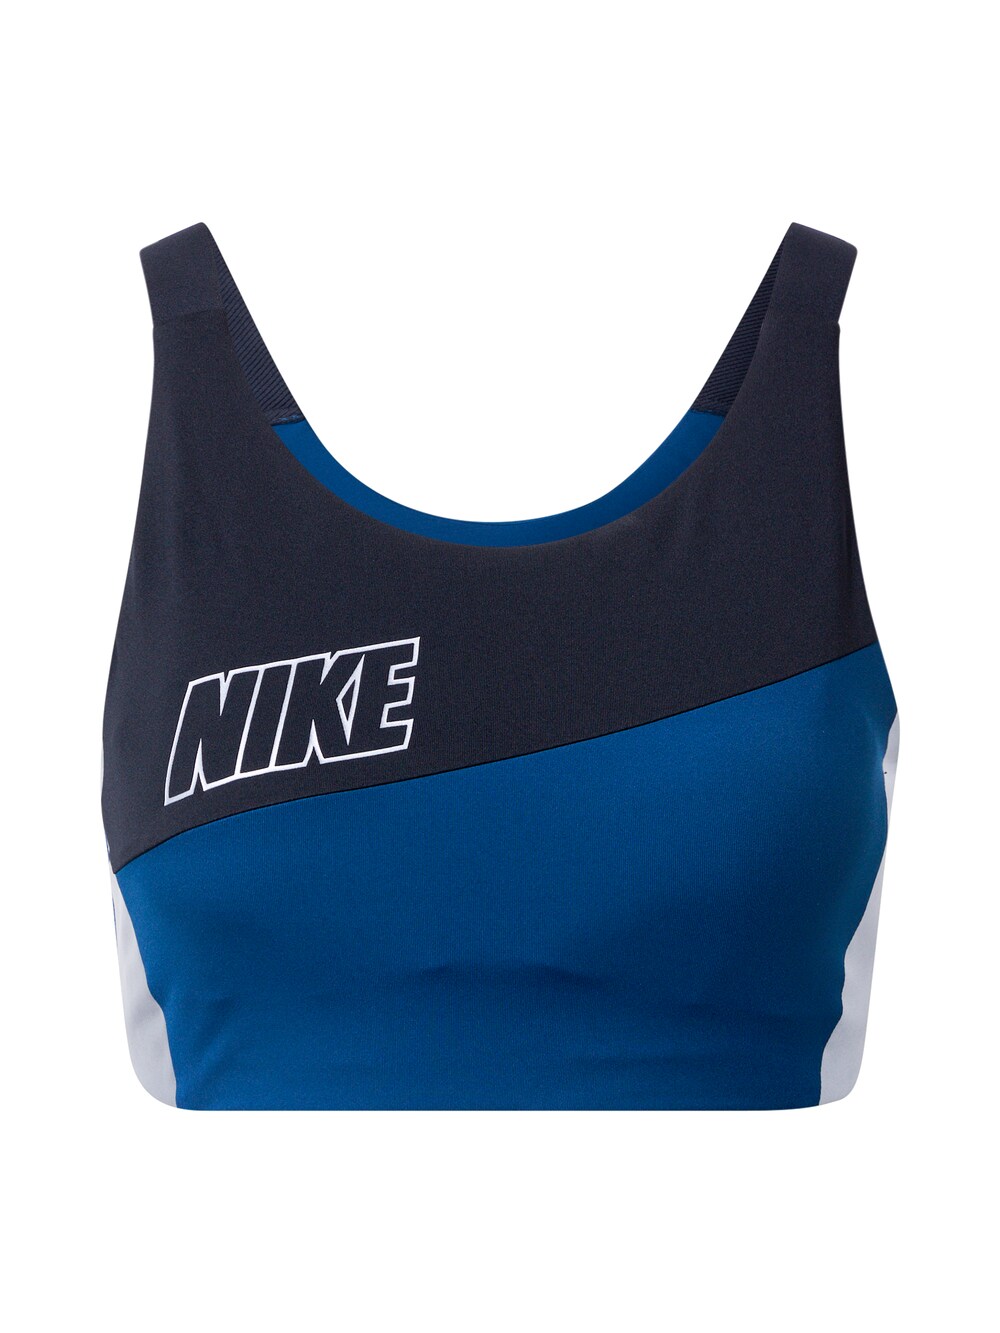 Обычный спортивный бюстгальтер Nike, морской синий/королевский синий